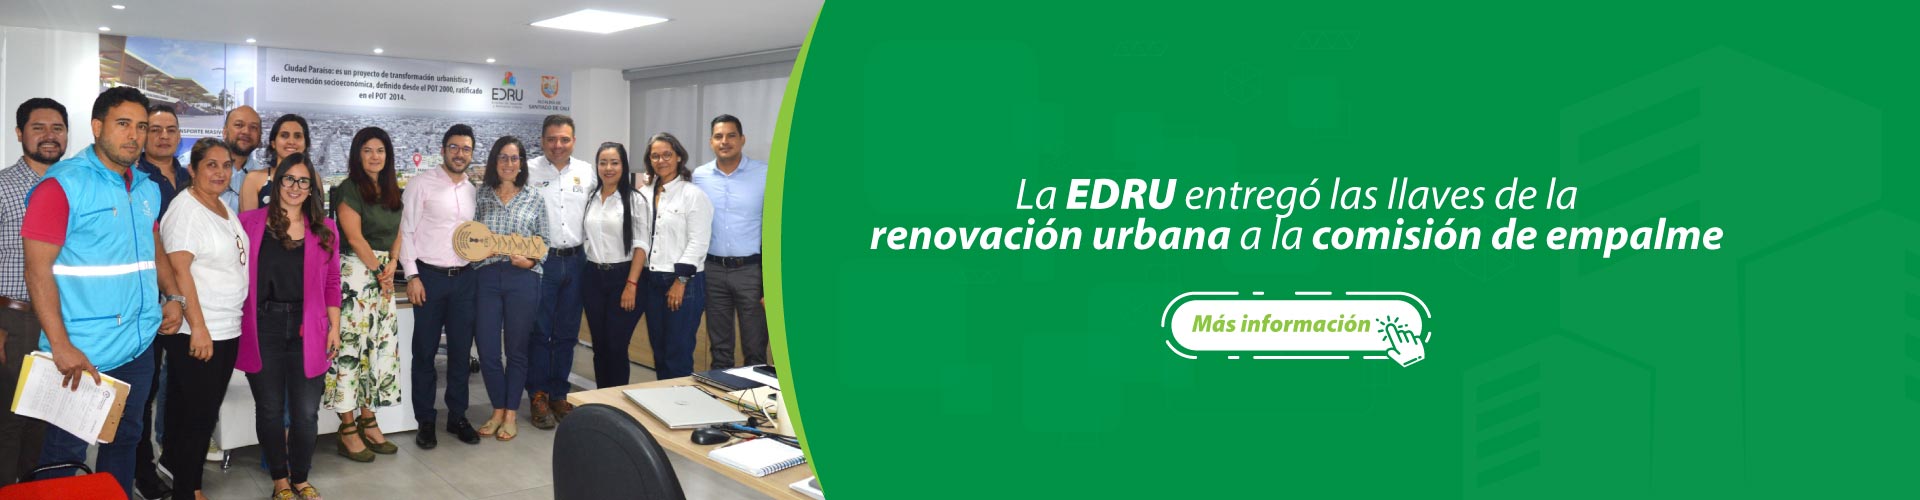 La EDRU entregó las llaves de la renovación urbana a la comisión de empalme de Alejandro Eder